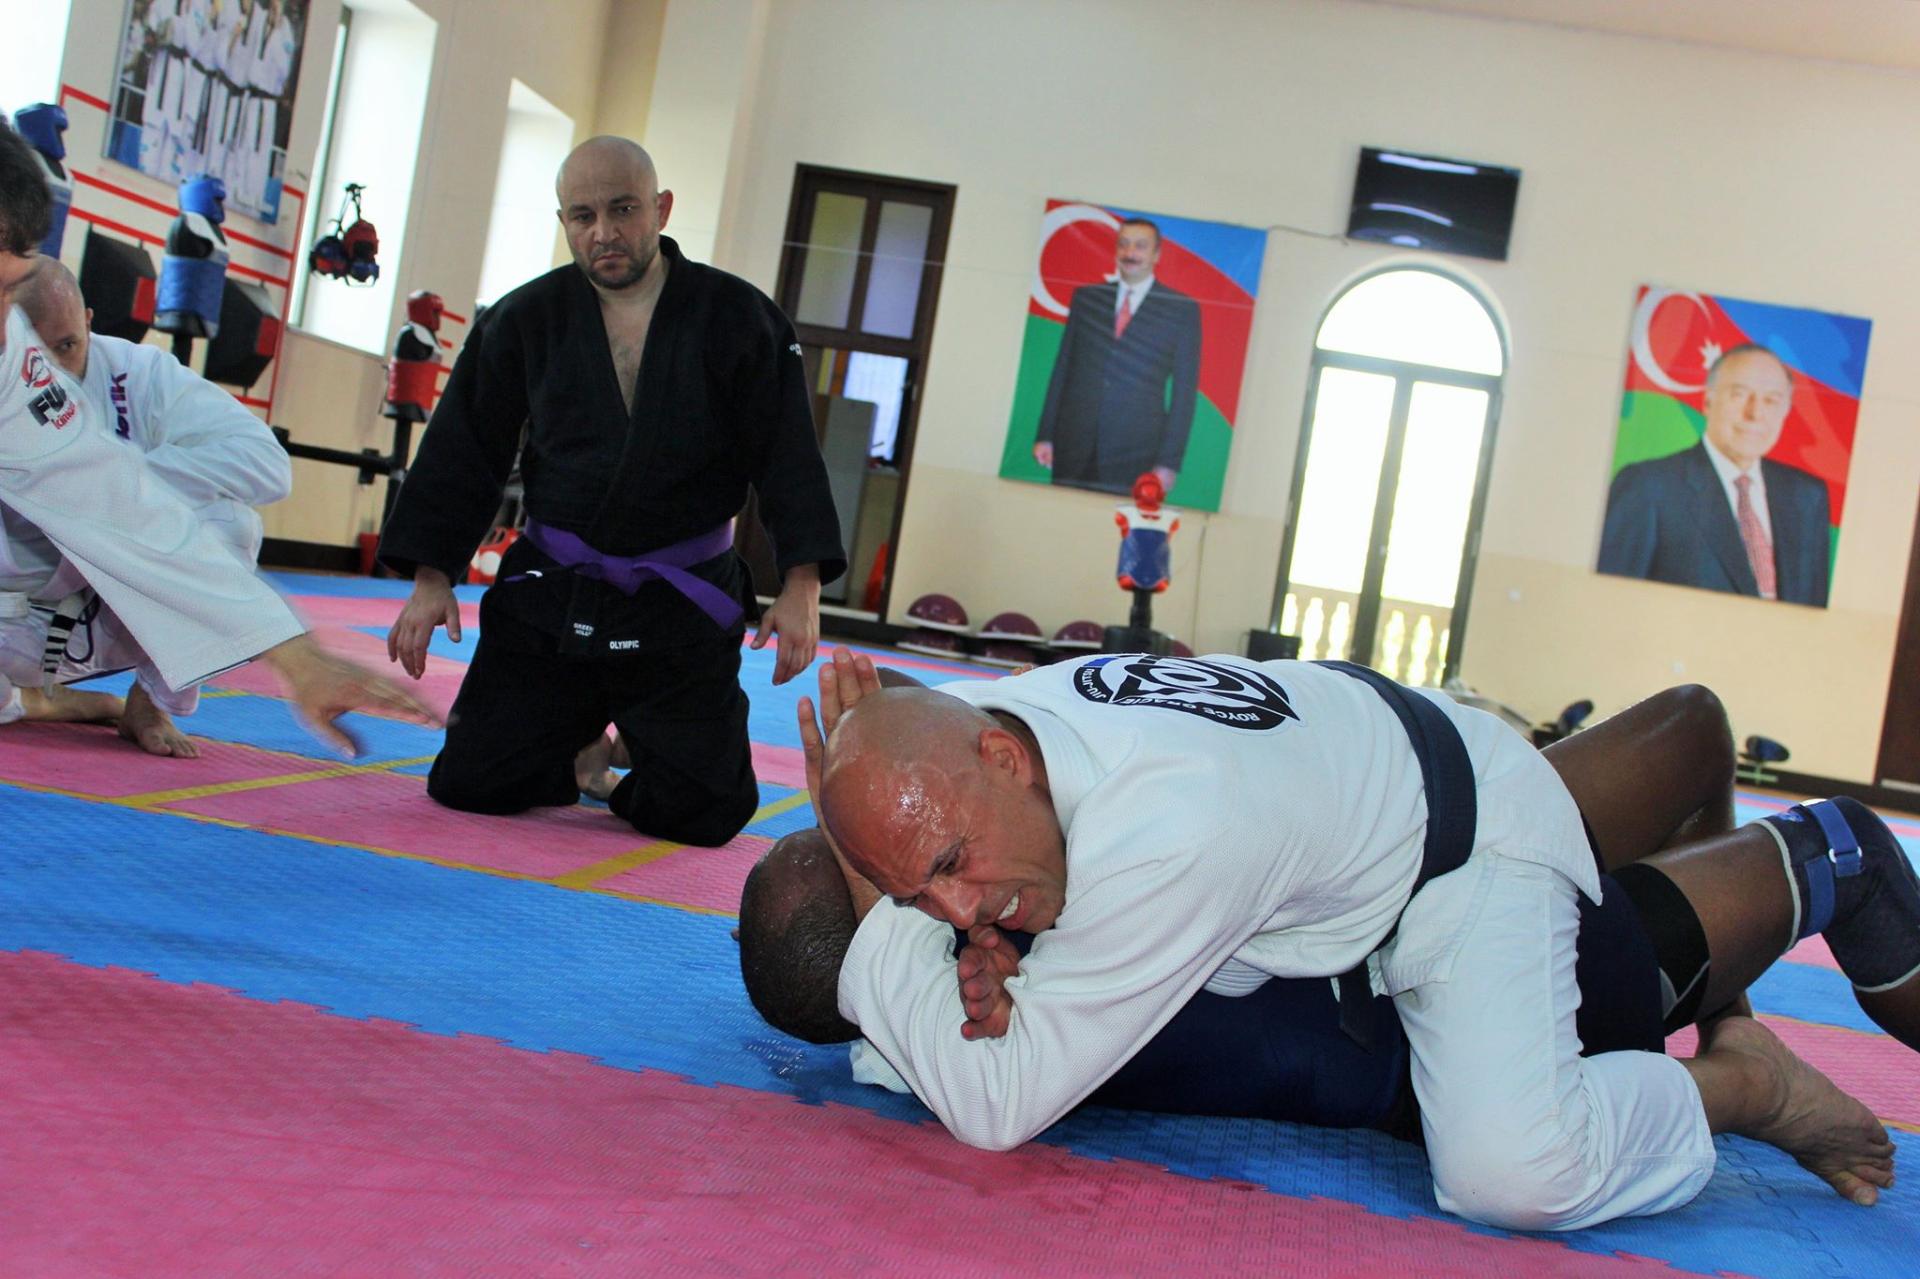 Ройс Грейси показал в Баку свое мастерство по бразильскому джиу-джитсу (ФОТО)